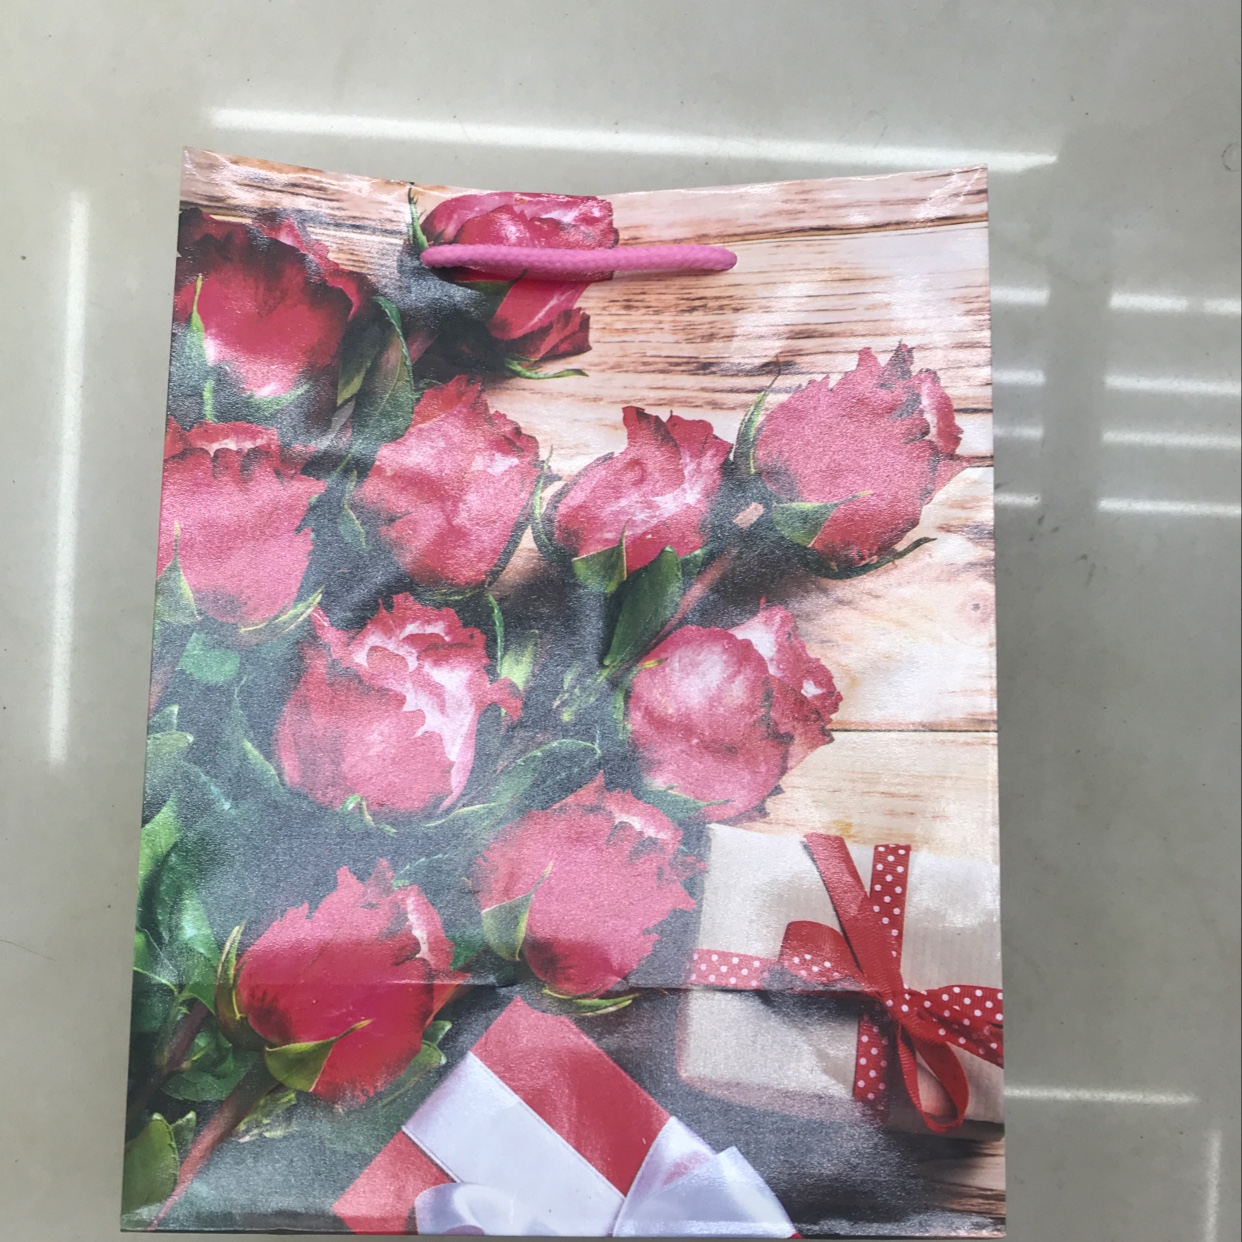 情人节母亲节日常送礼鲜花礼品袋